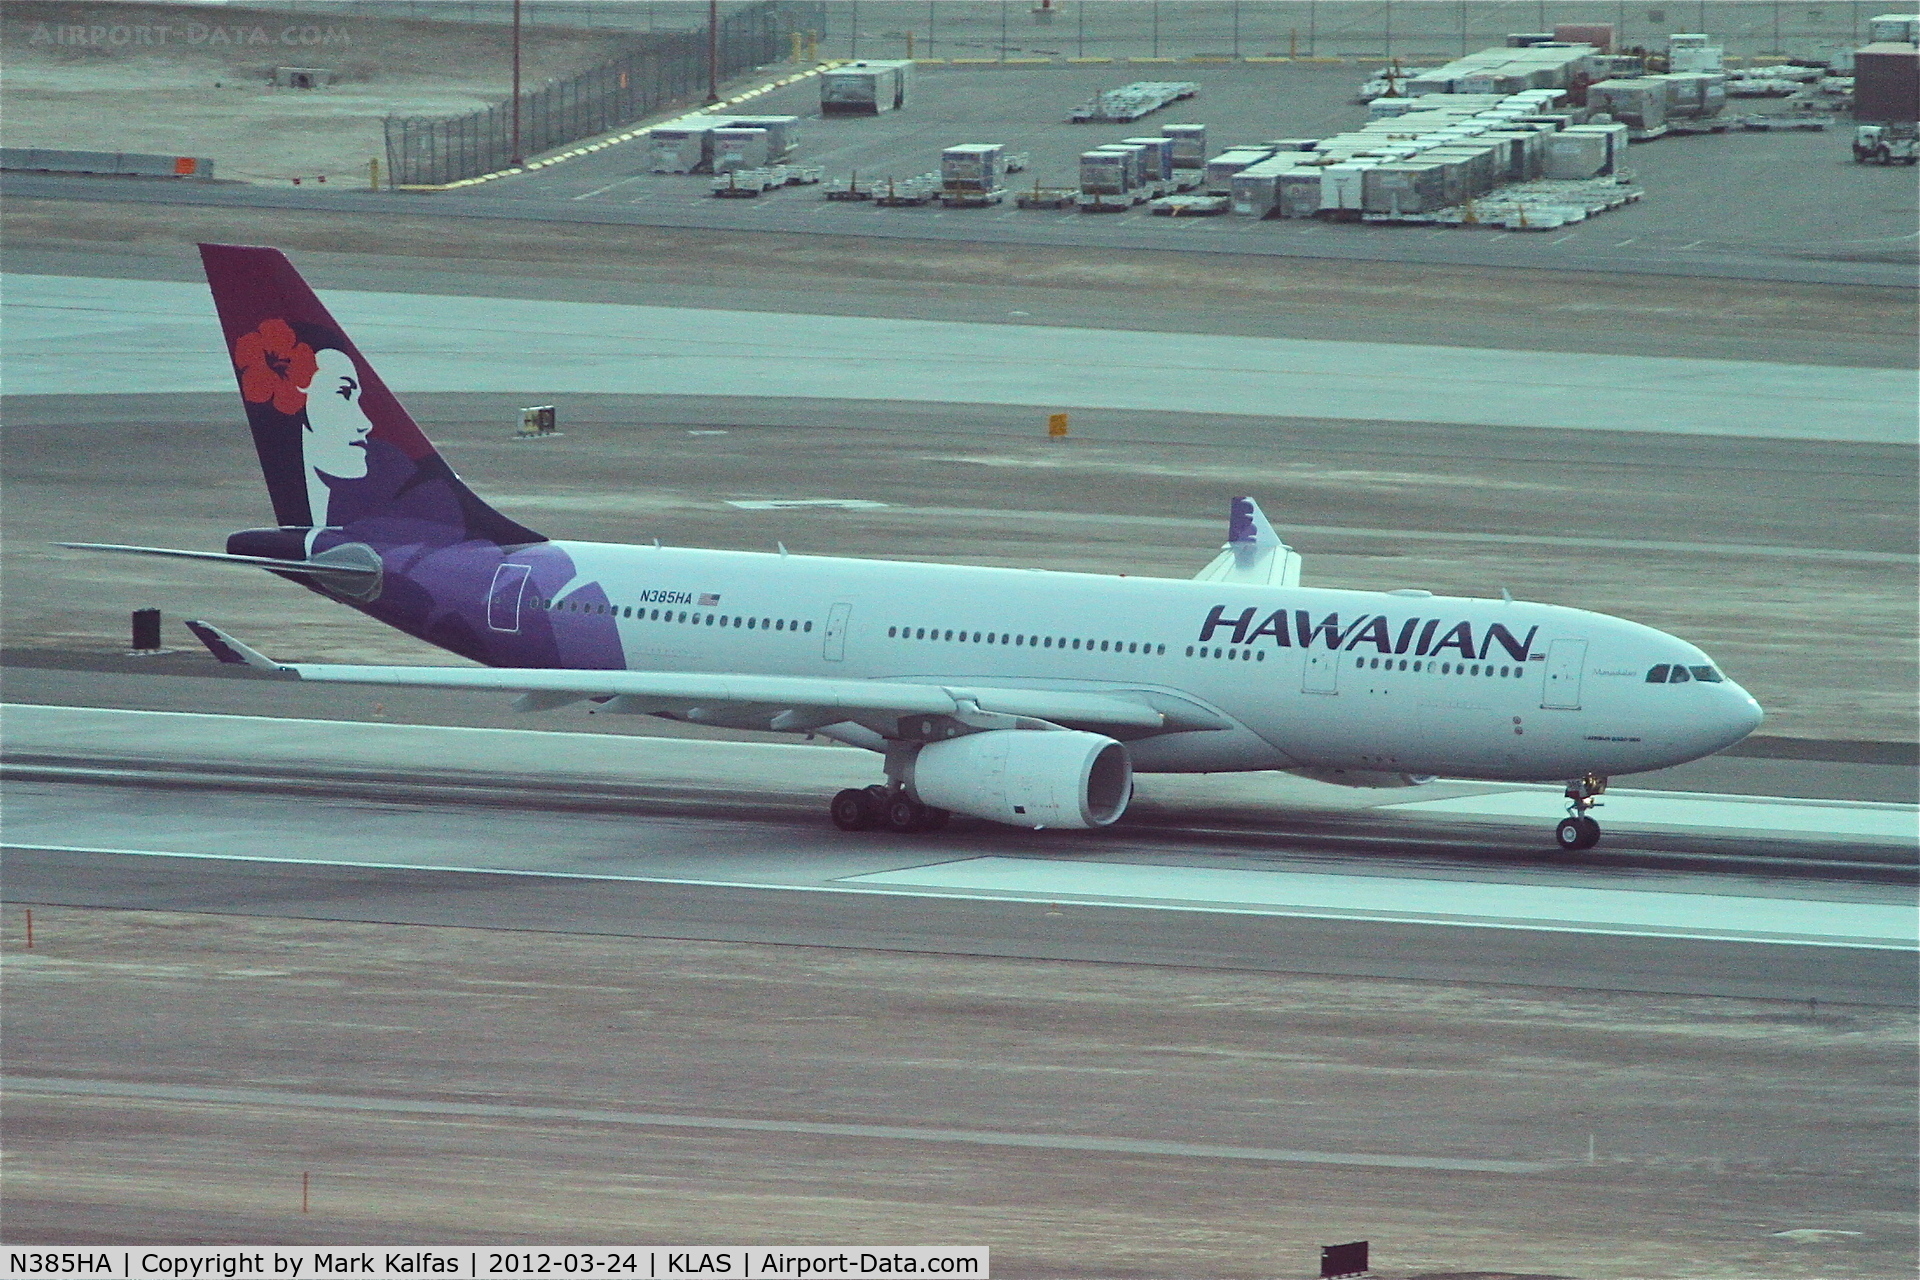 N385HA, 2012 Airbus A330-243 C/N 1295, Hawaiian Airlines Airbus Airbus A330-243, departing RWY 19L KLAS.